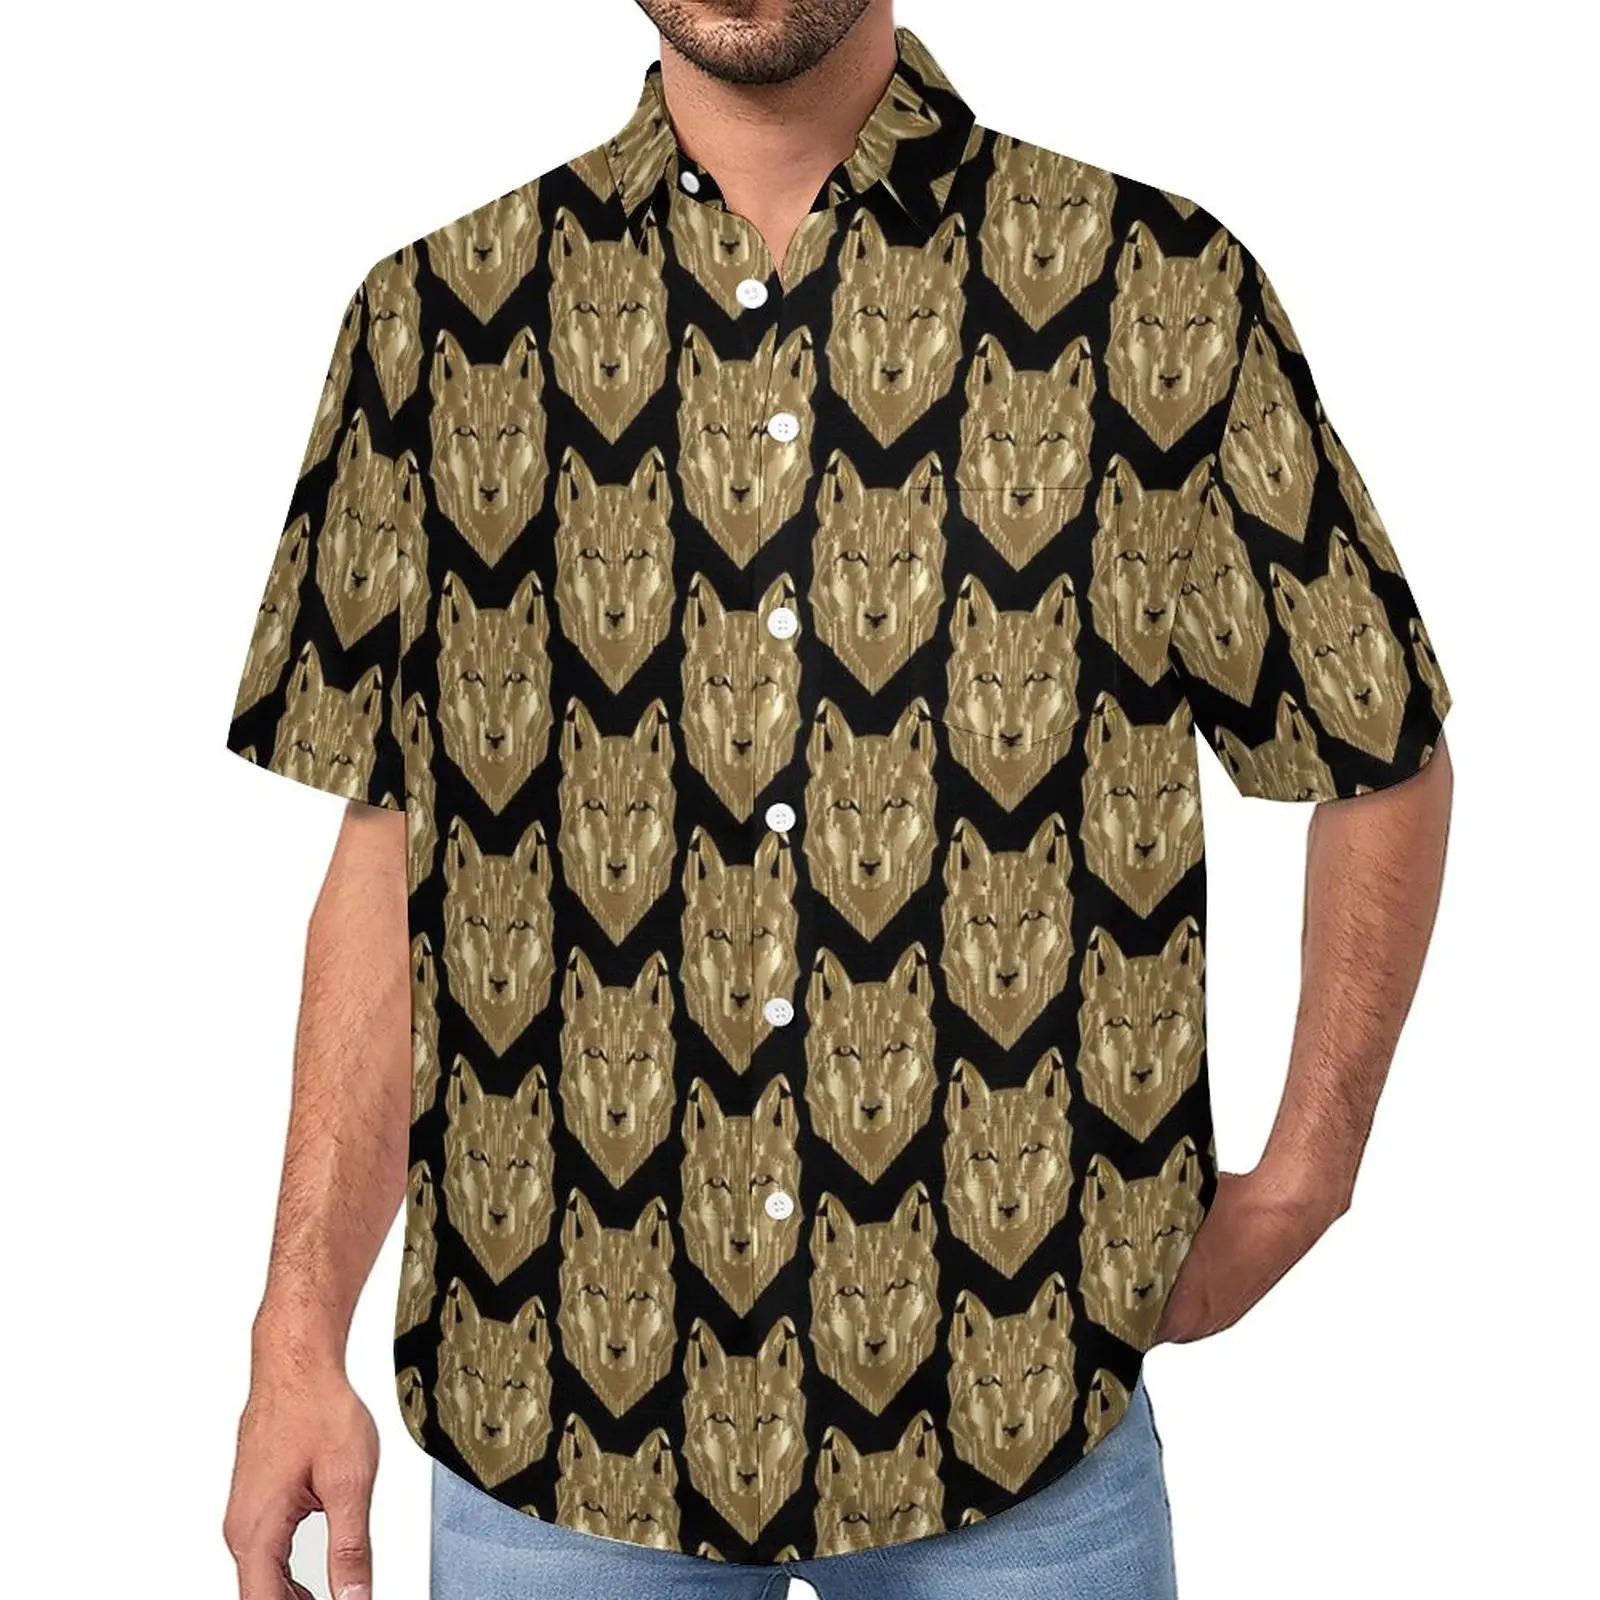 

Пляжная рубашка с принтом золотого волка, забавные Гавайские повседневные рубашки с животными, мужские эстетические блузки, топы с принтом с коротким рукавом